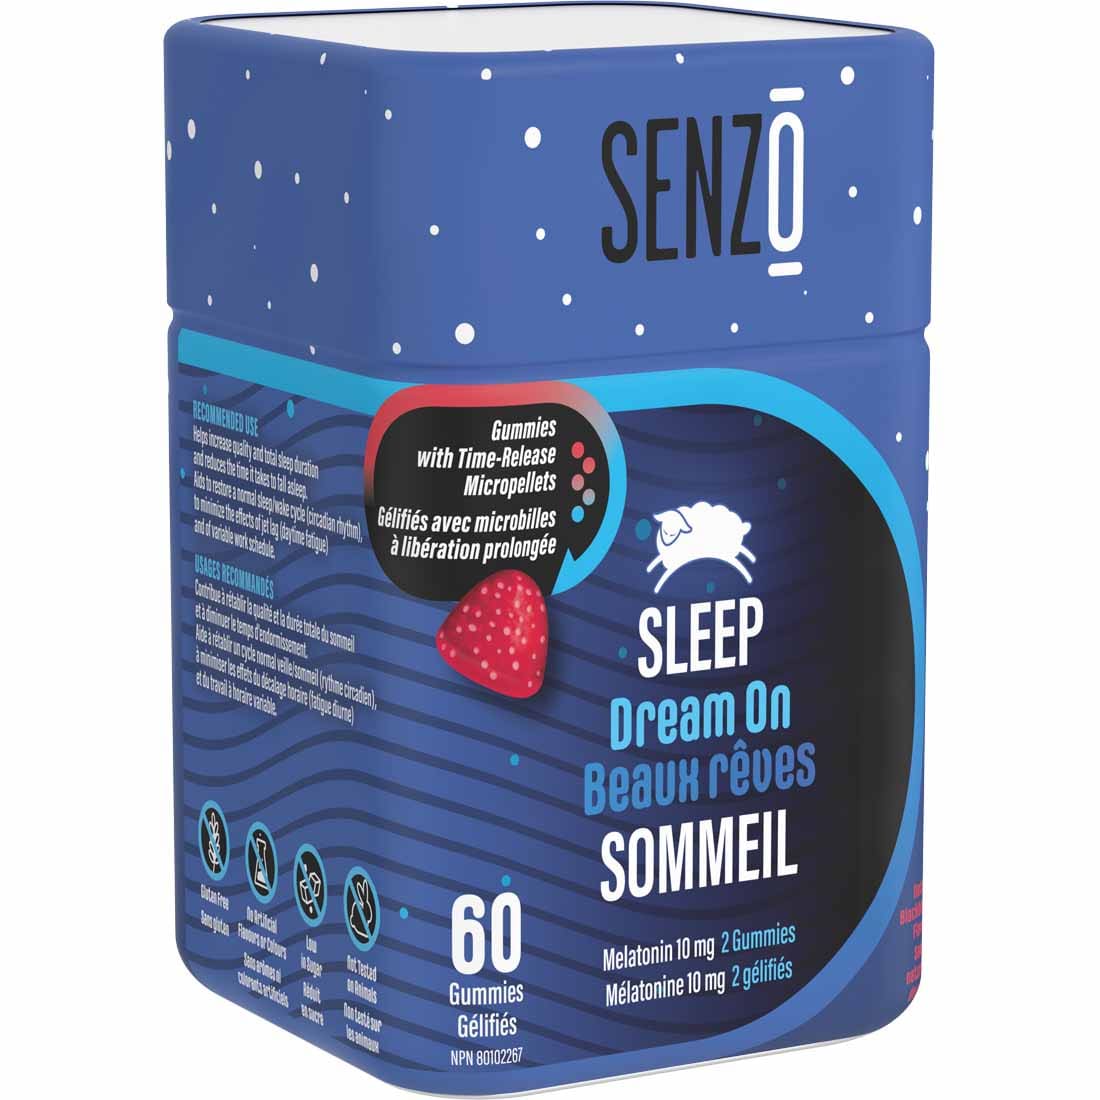 Senzo Dream On - Sleep Gummies, 60 Gummies